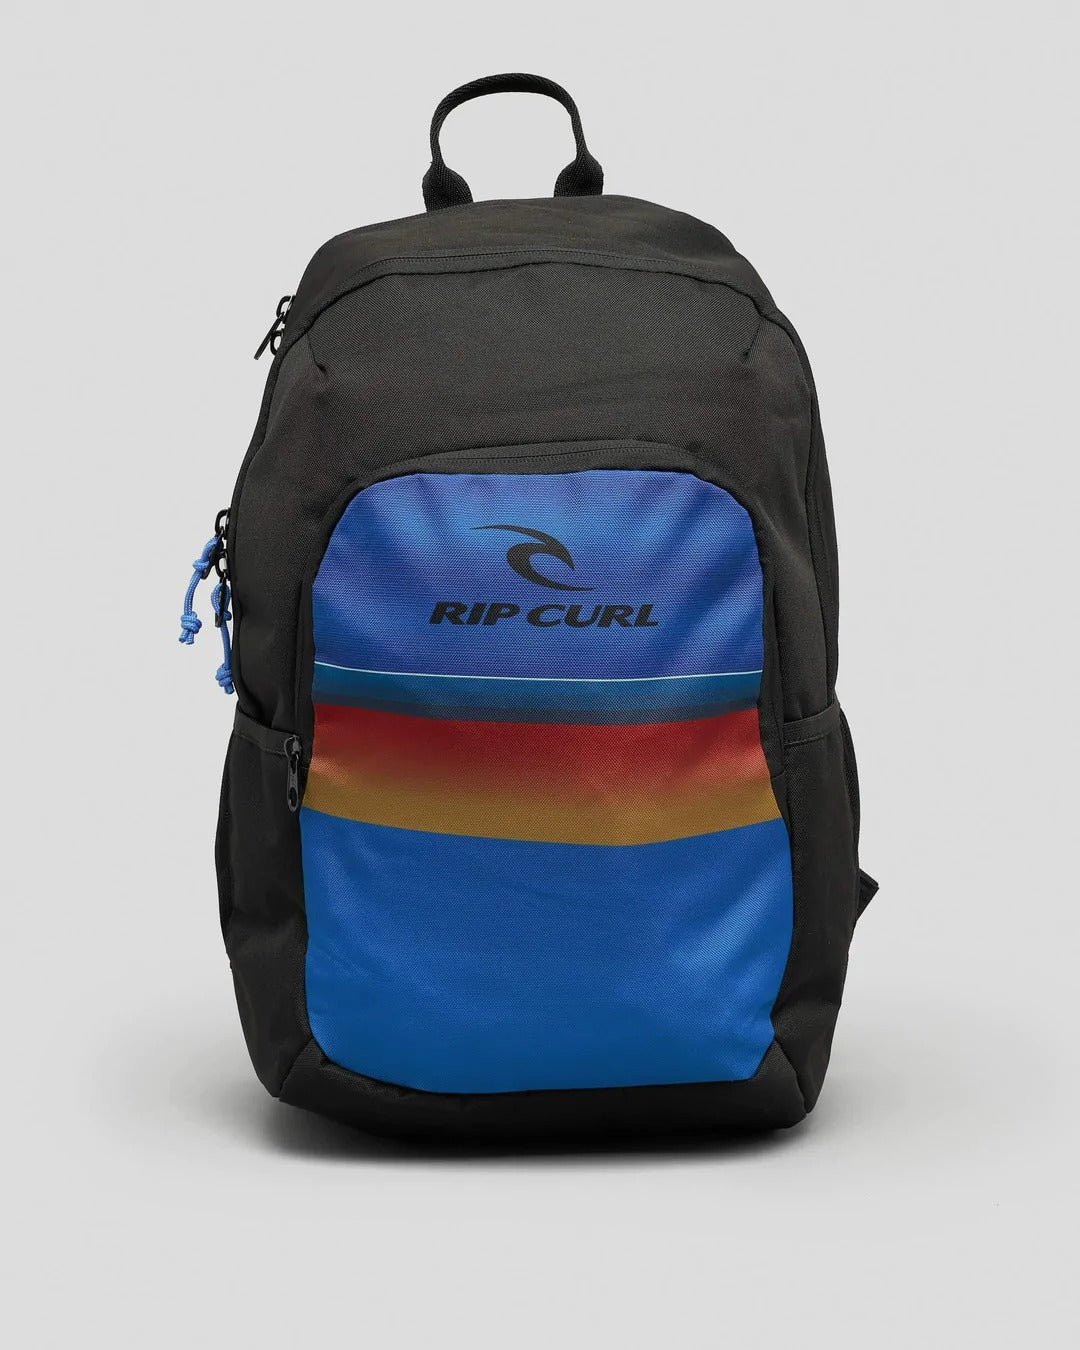 Ozone 30L School Backpack